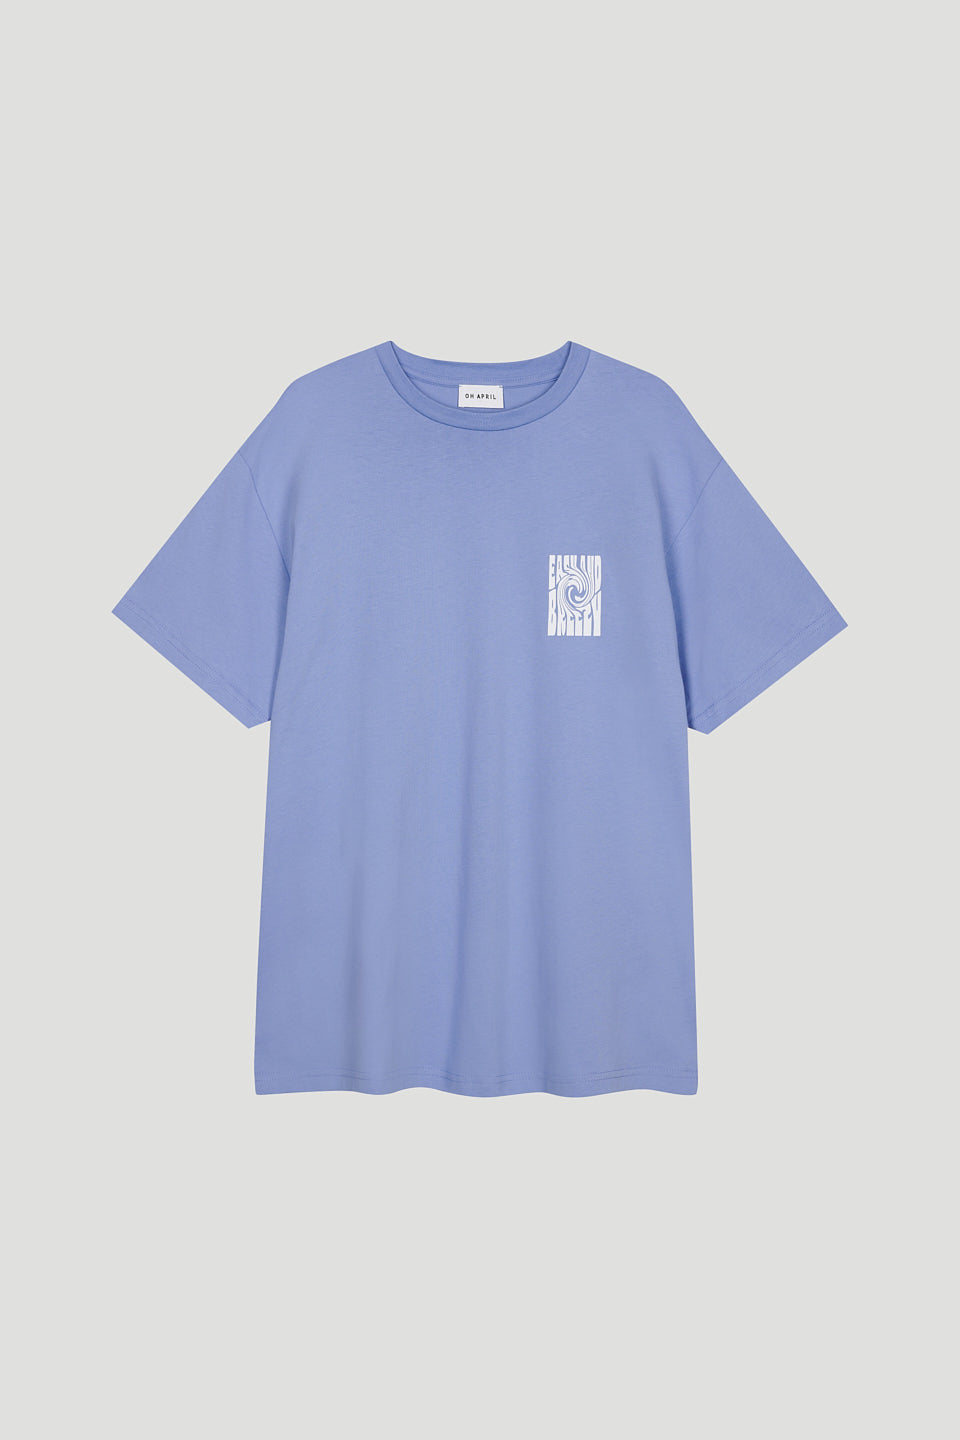 Boyfriend T-Shirt Soft Blue Breezy